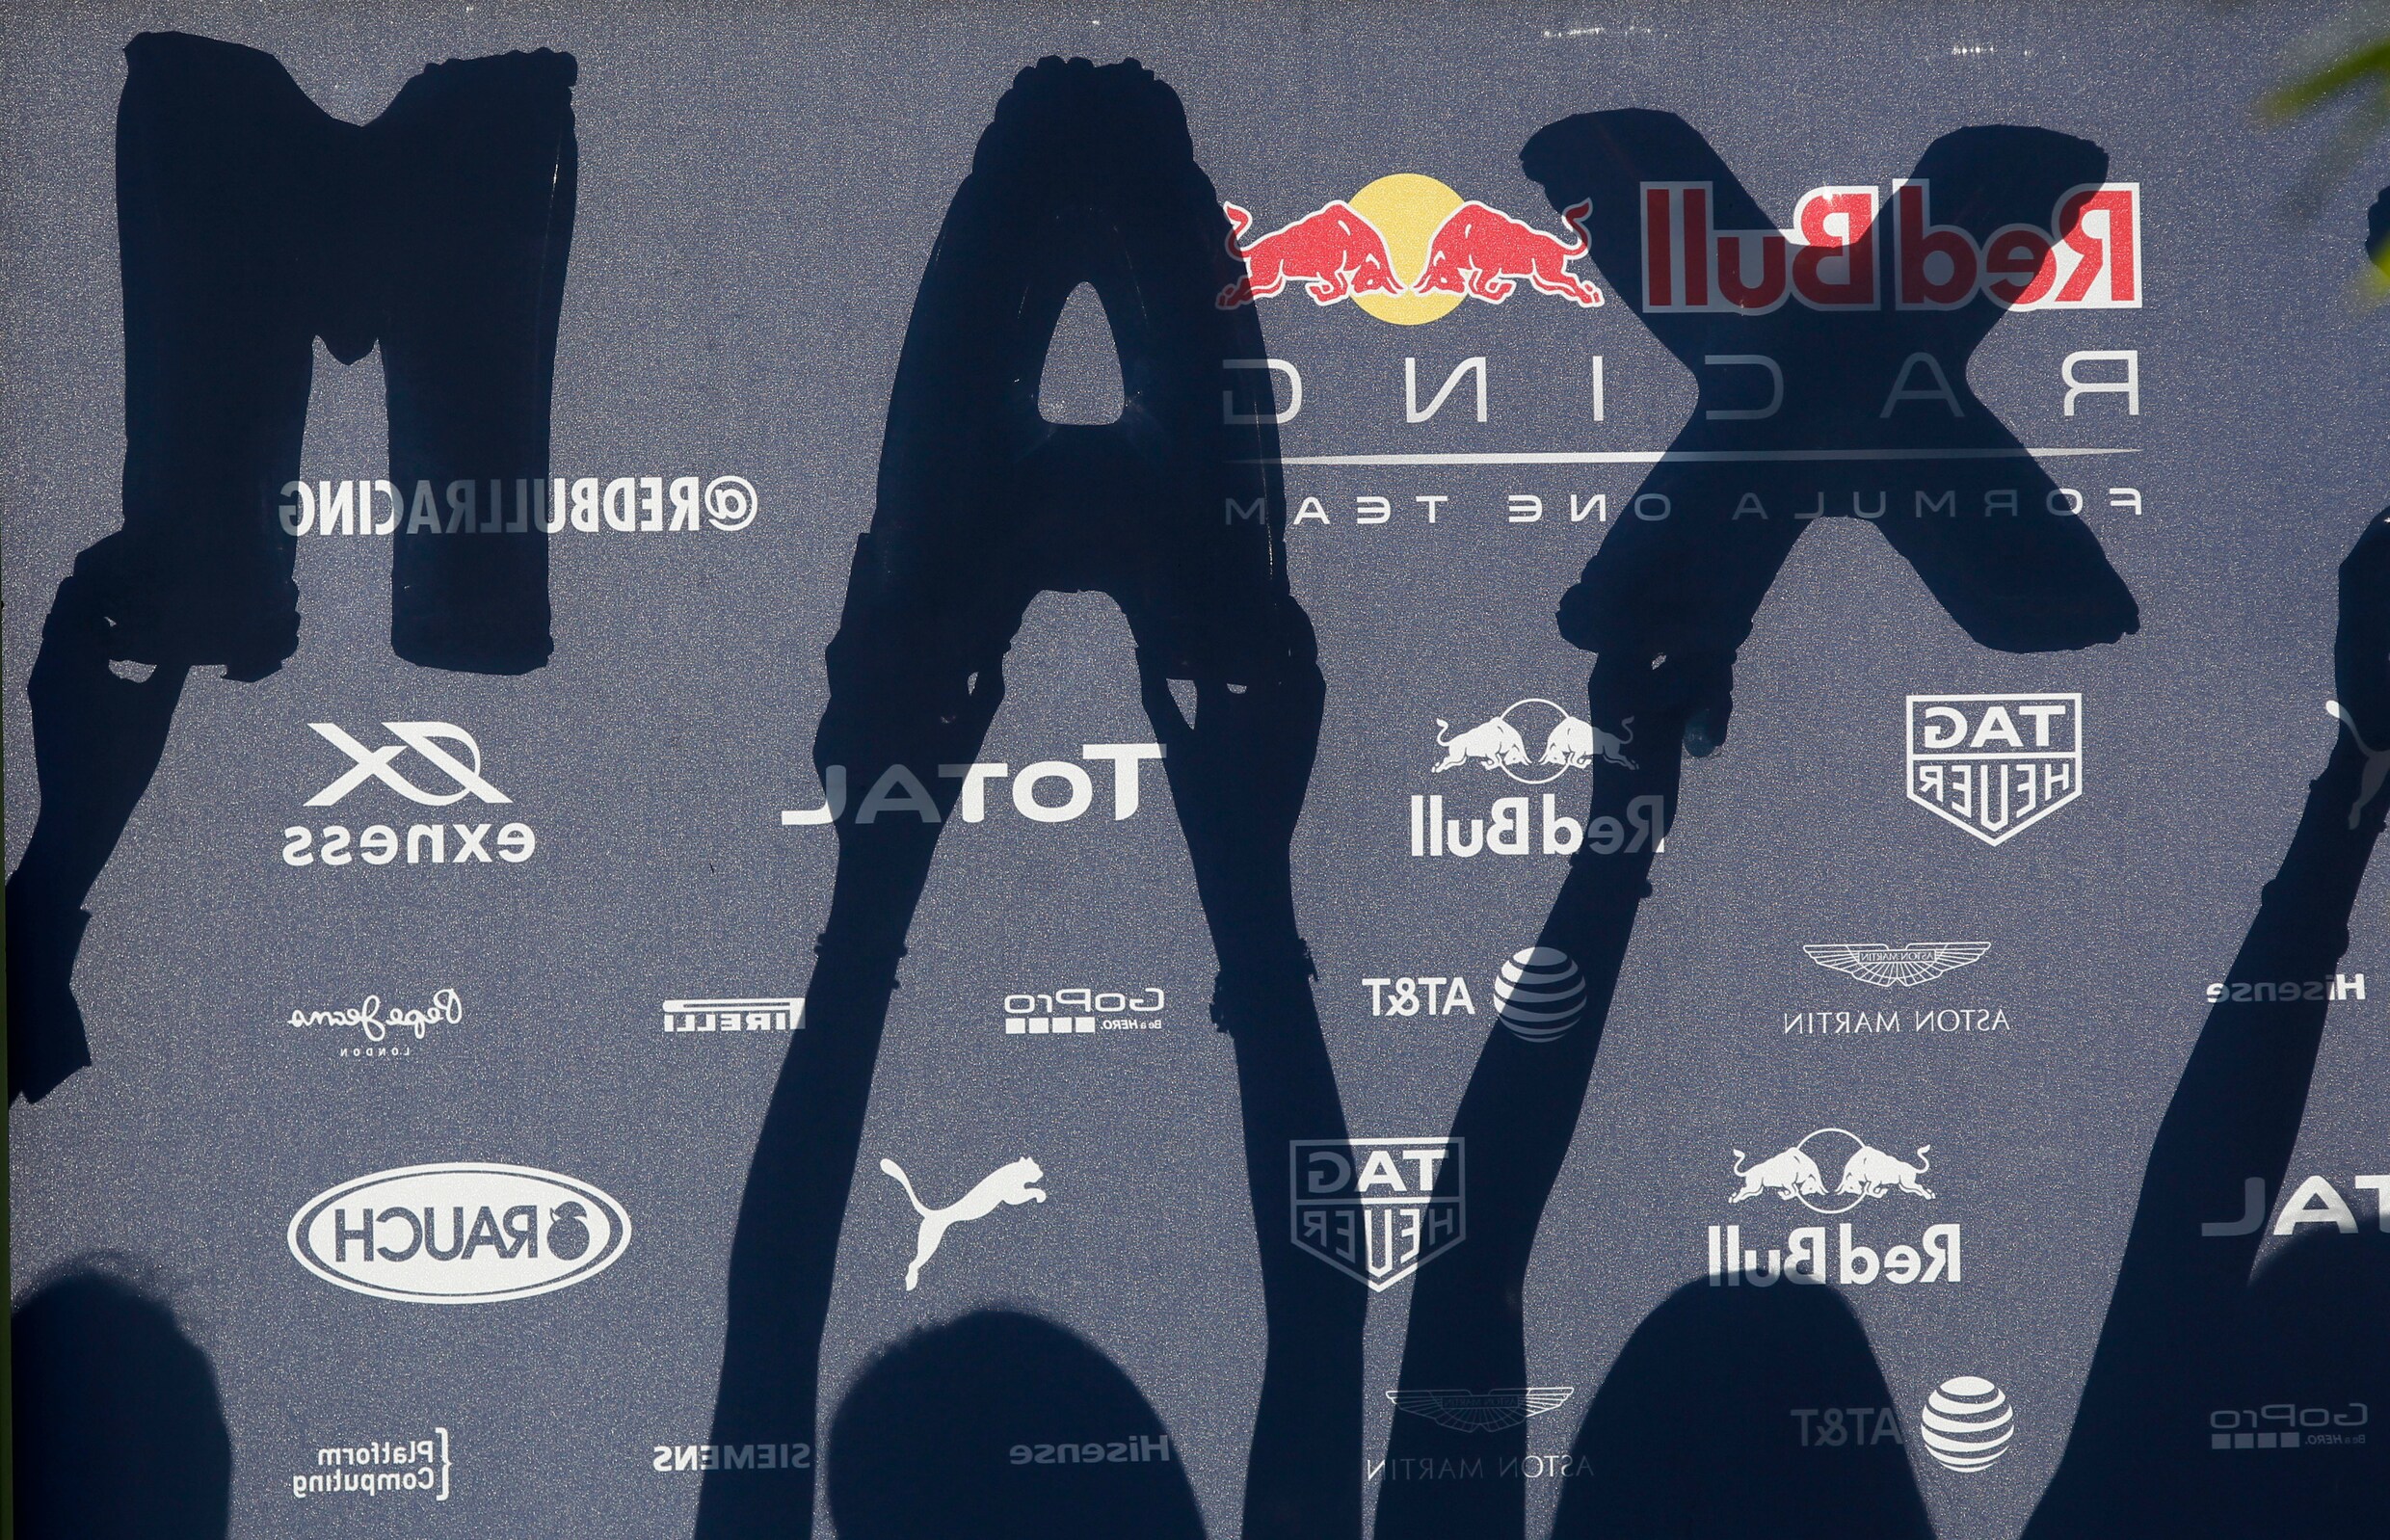 Ex-wereldkampioen haalt (weer) stevig uit naar Max Verstappen: "Gevaarlijk racegedrag komt door videospelletjes"